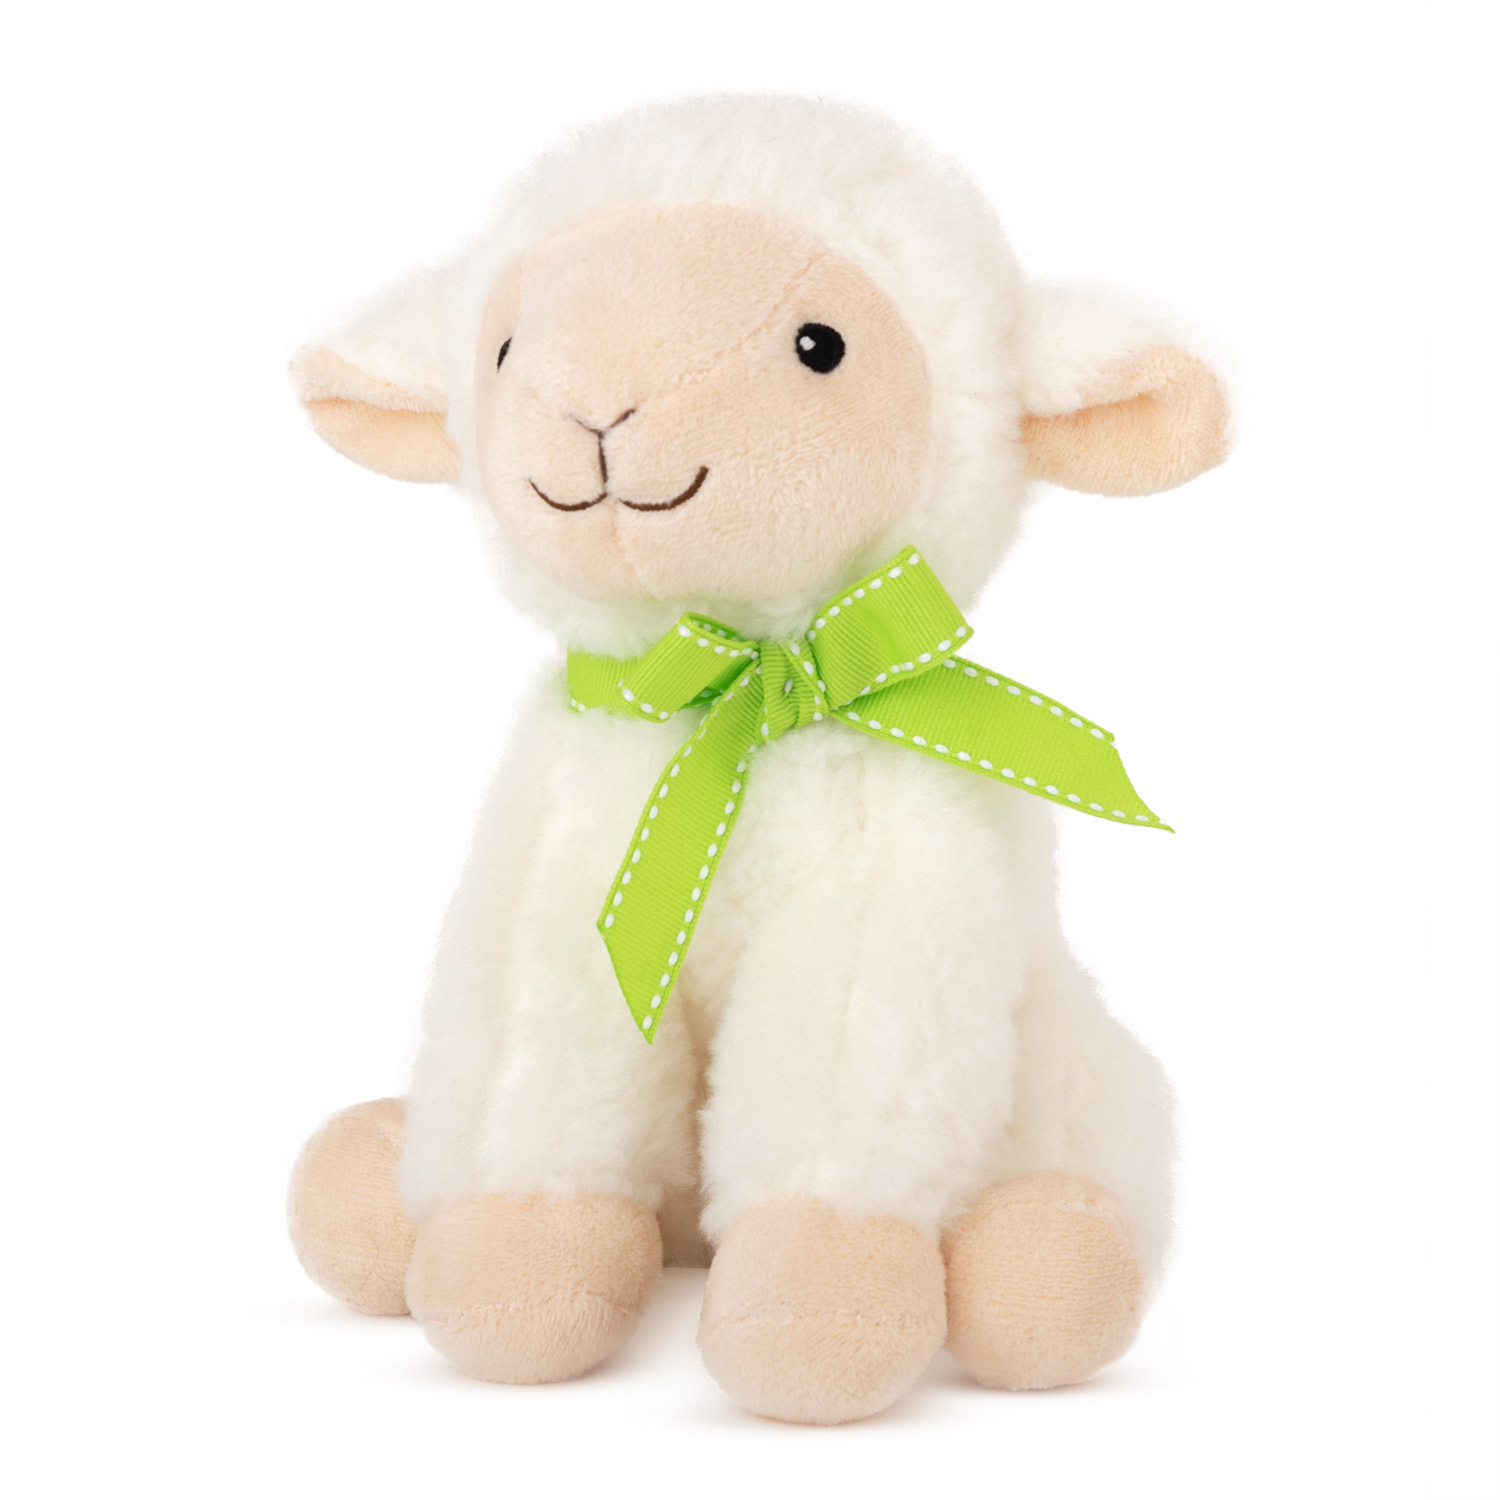 Sheep with green ribbon